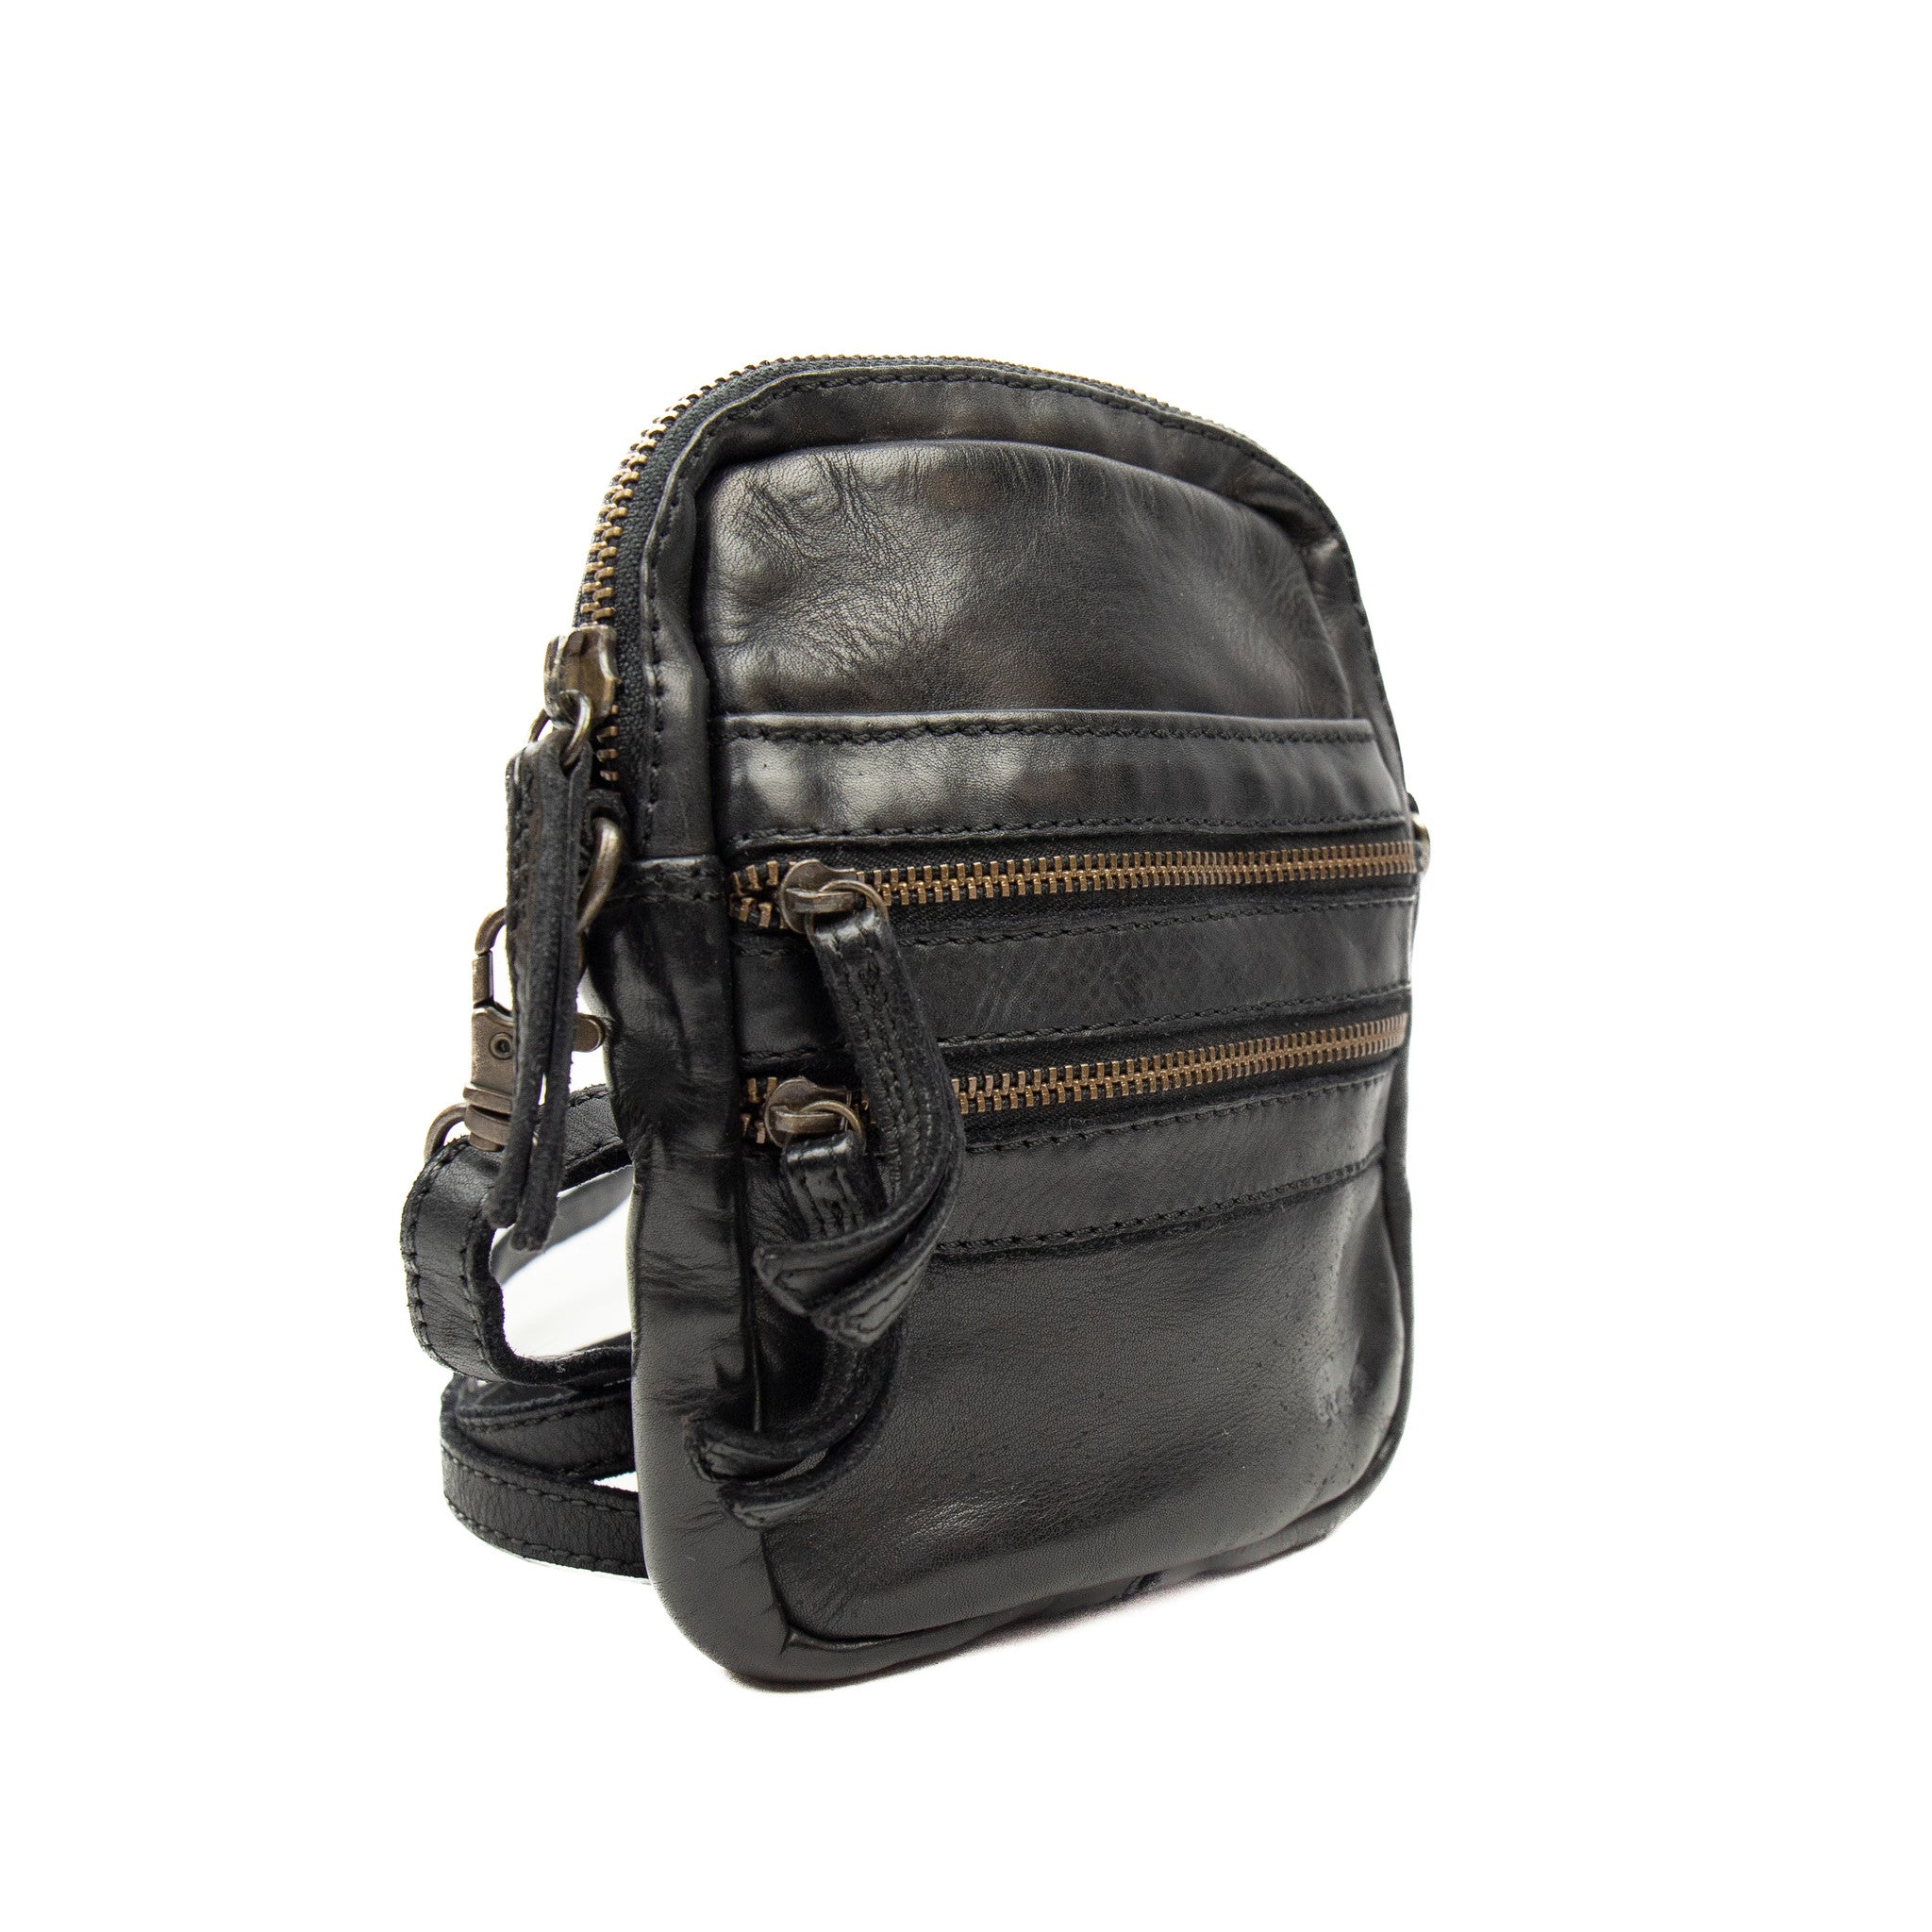 Shoulder bag 'Vikas' black - CL 3701